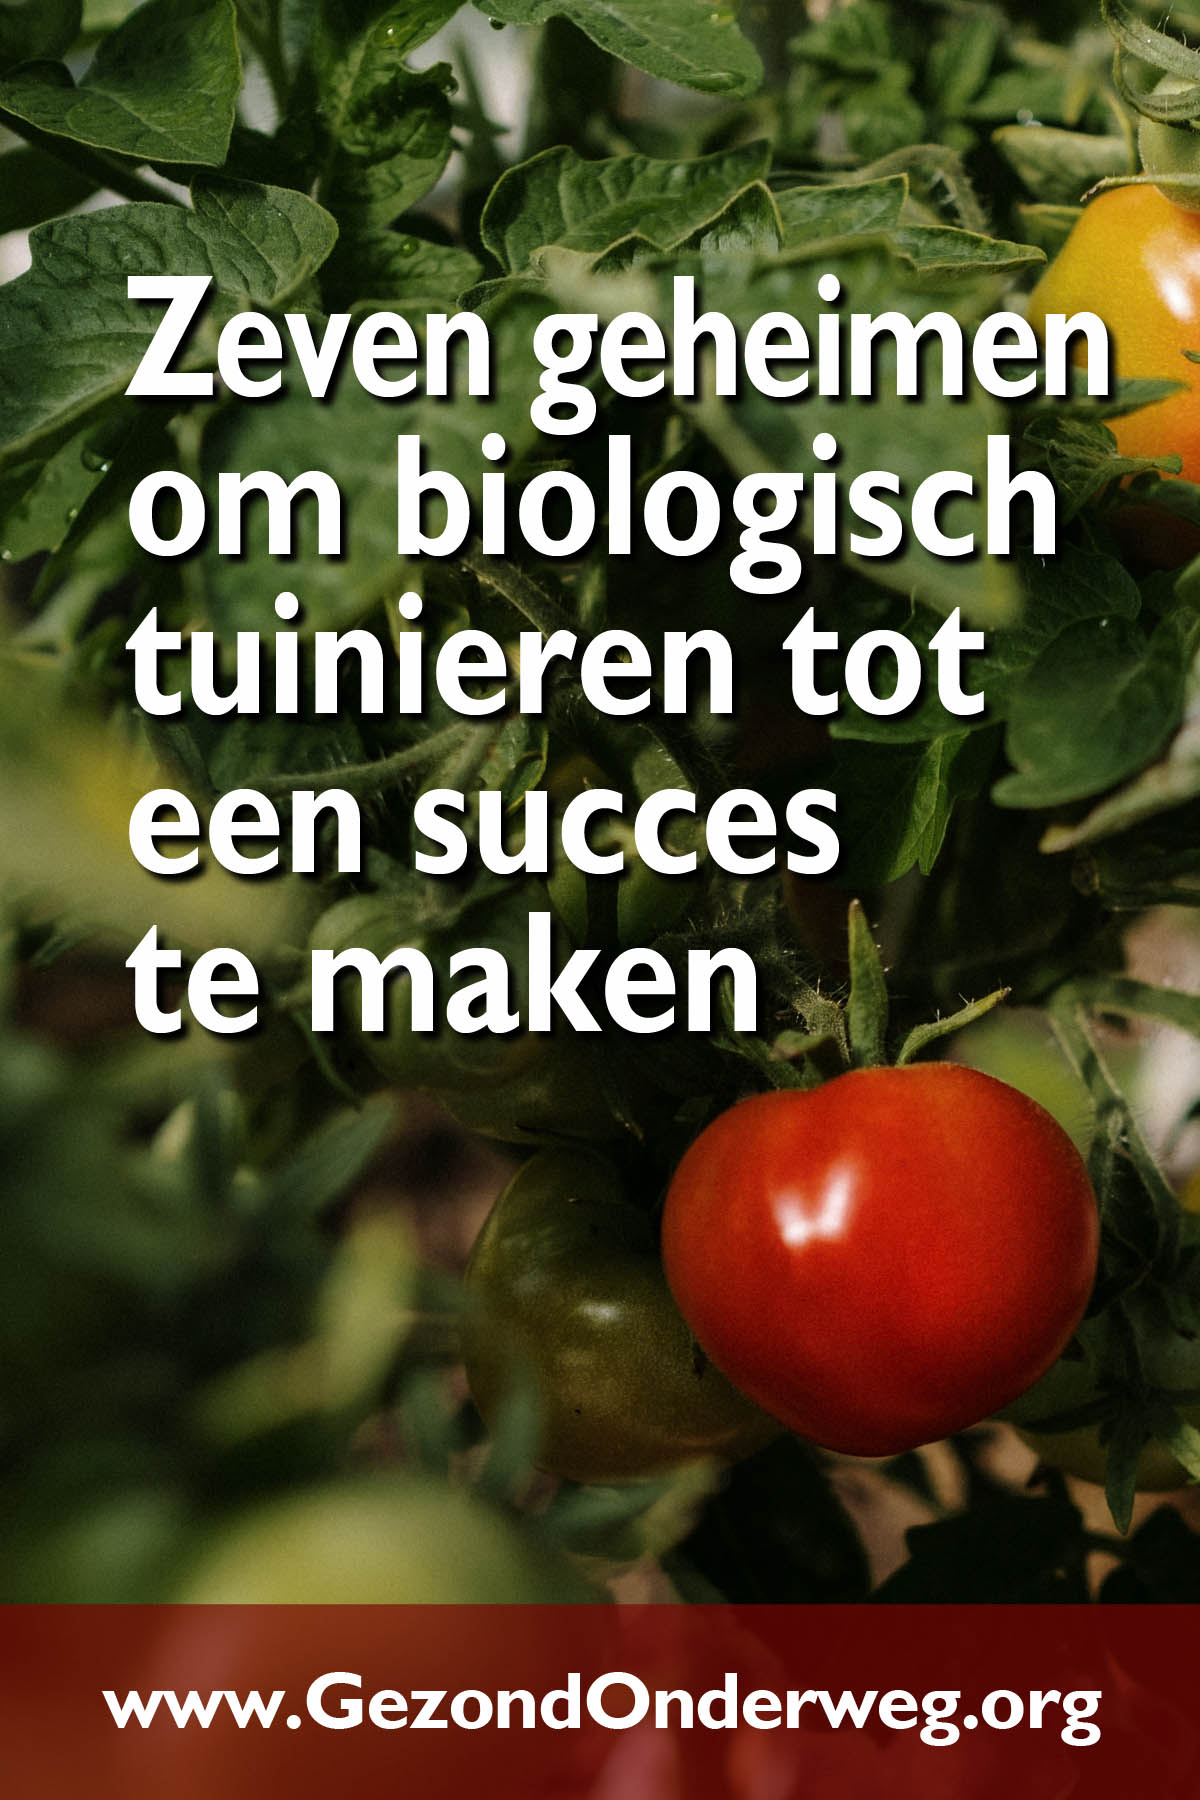 Zeven geheimen om biologisch tuinieren tot een succes te maken